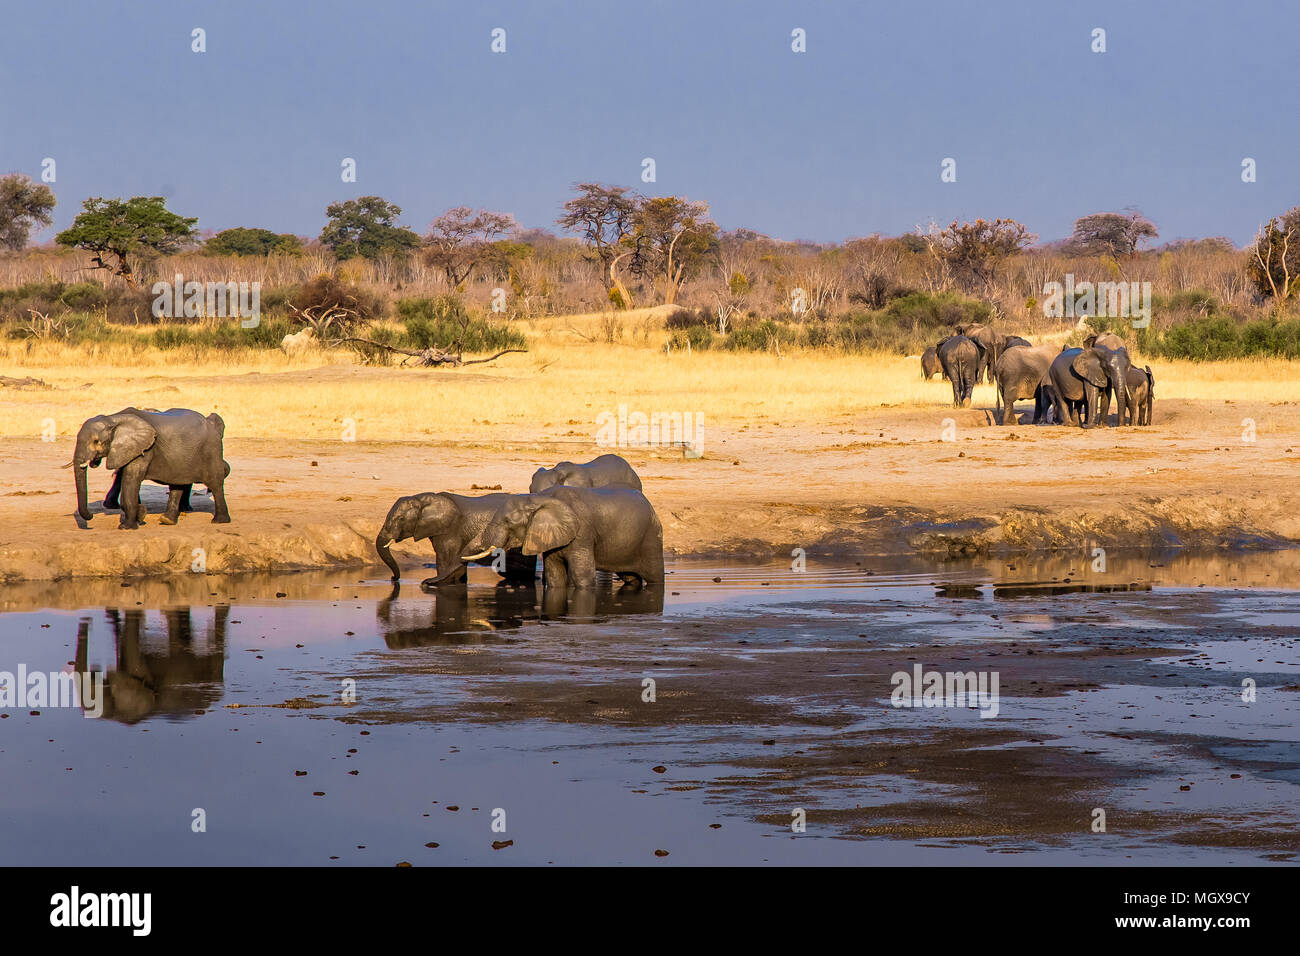 Les éléphants se rassemblent autour d'une réduction de la taille du trou d'eau au cours d'une sécheresse dans le parc national de Hwange, Zimbabwe, le 9 septembre 2016. Banque D'Images